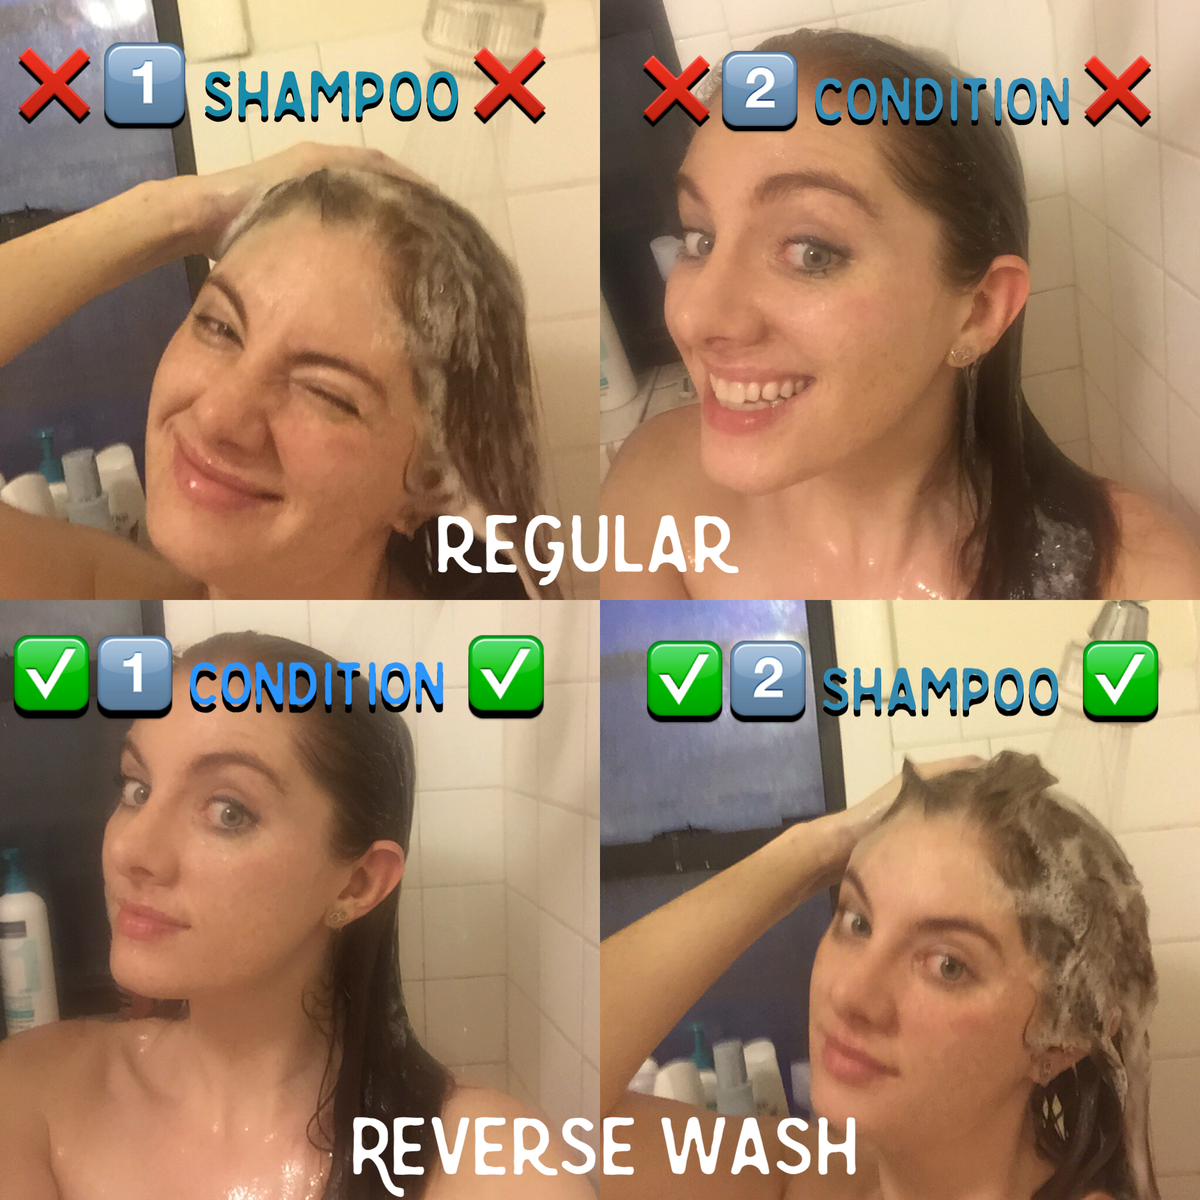 Werkt de omgekeerde haarwasmethode echt?